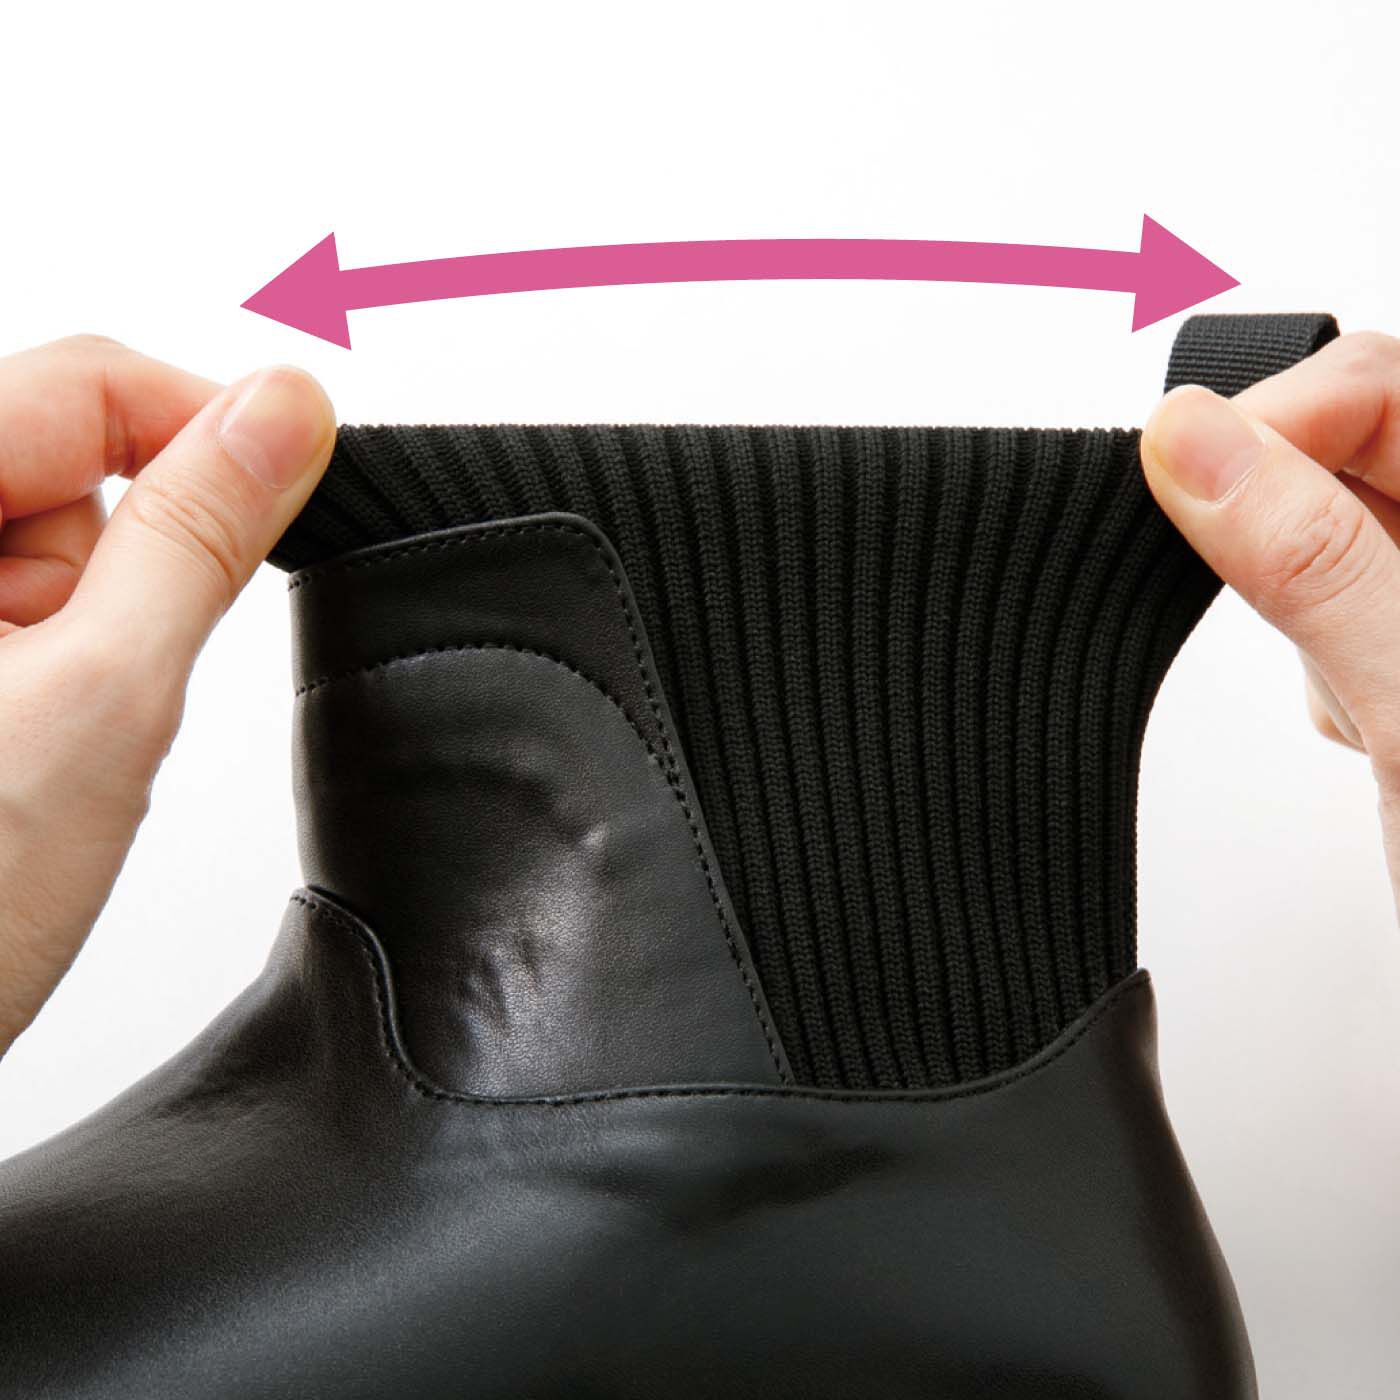 フェリシモの雑貨 Kraso|UP.de　きちんと見えるのにするんと履ける らくちんニット遣いの防水仕様ブーツ|筒部分はストレッチニットなので、するっとらくに足入れできます。